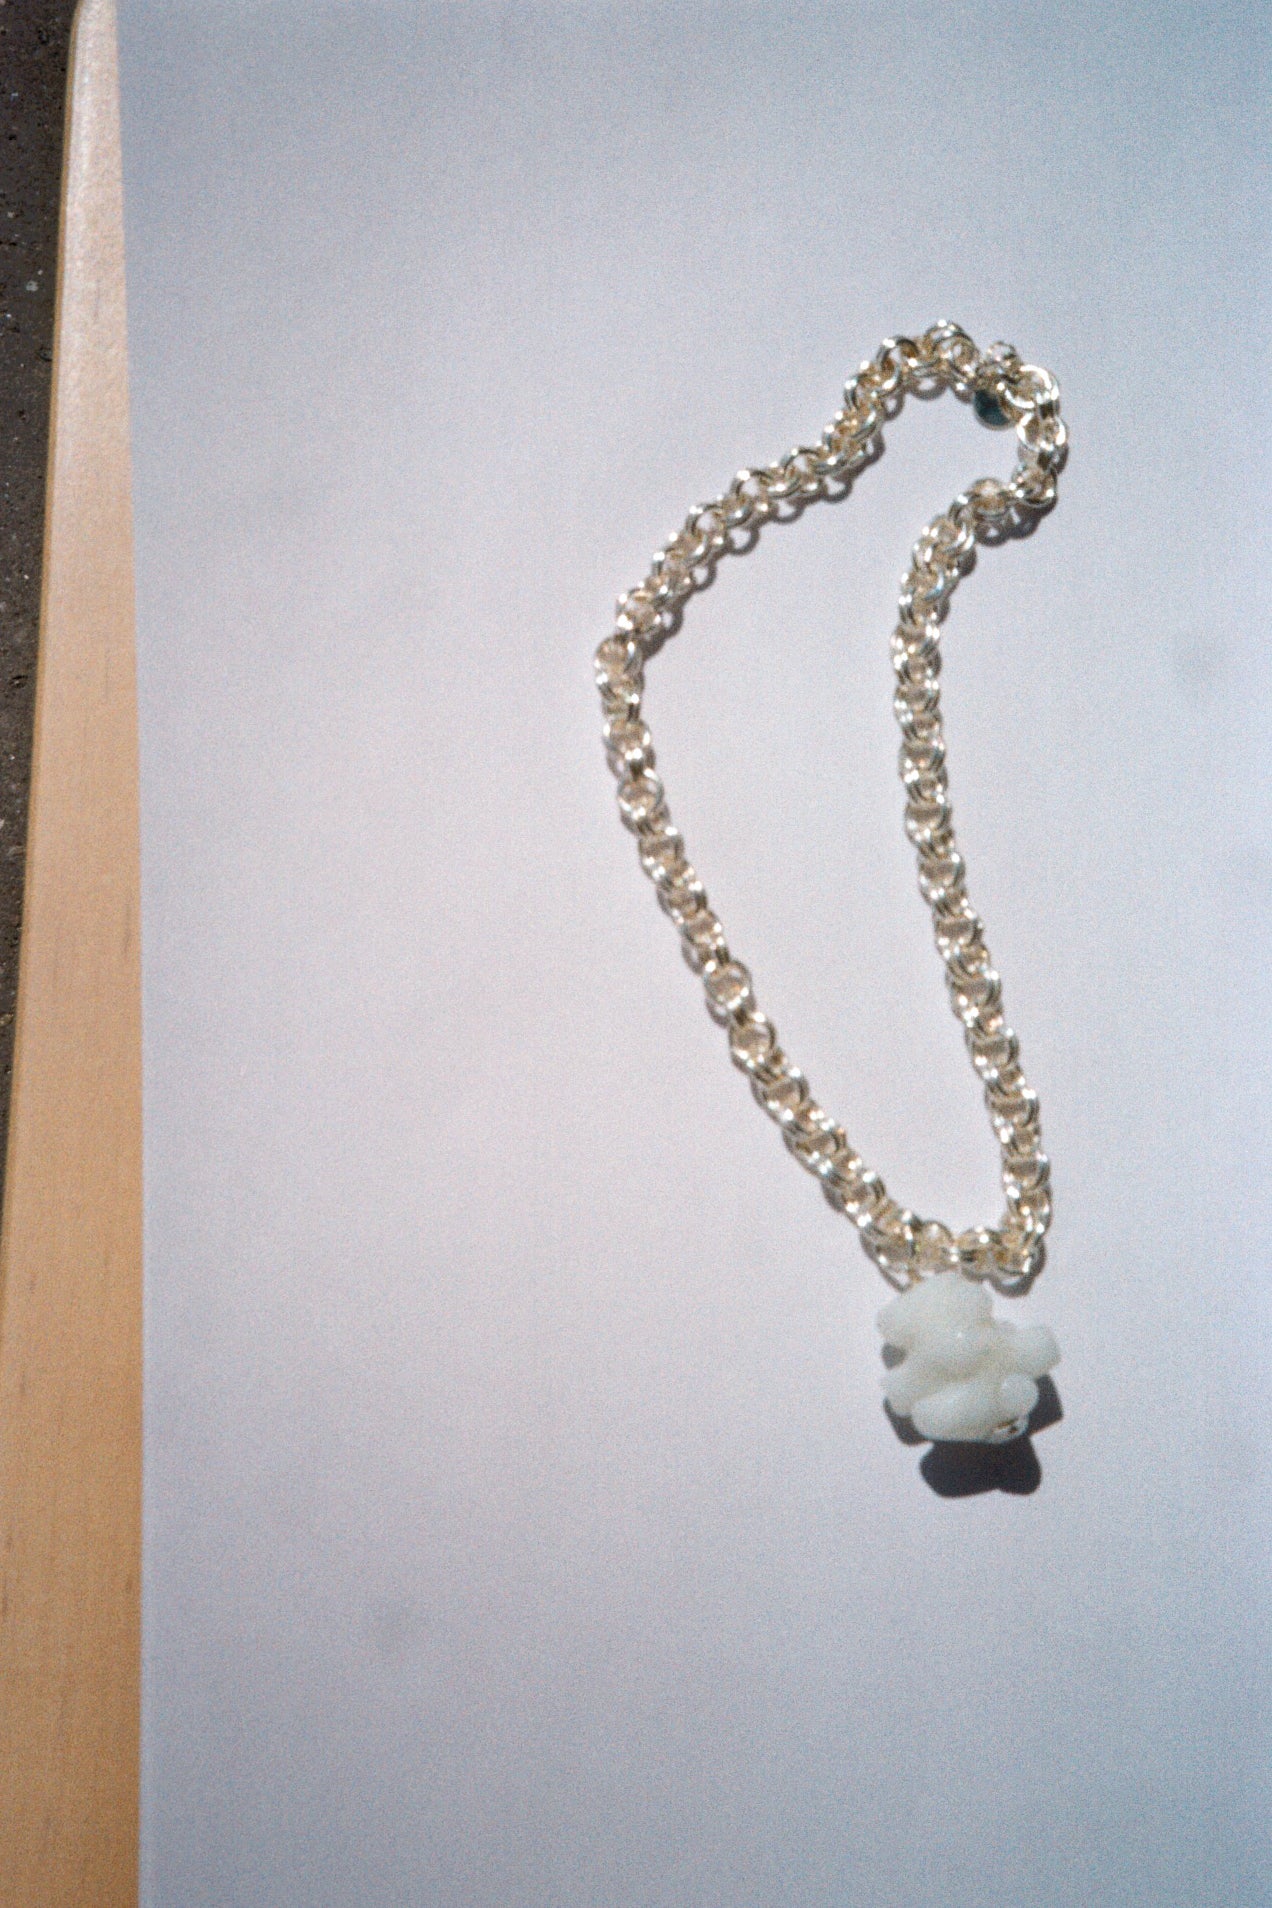 Abashi necklace - White